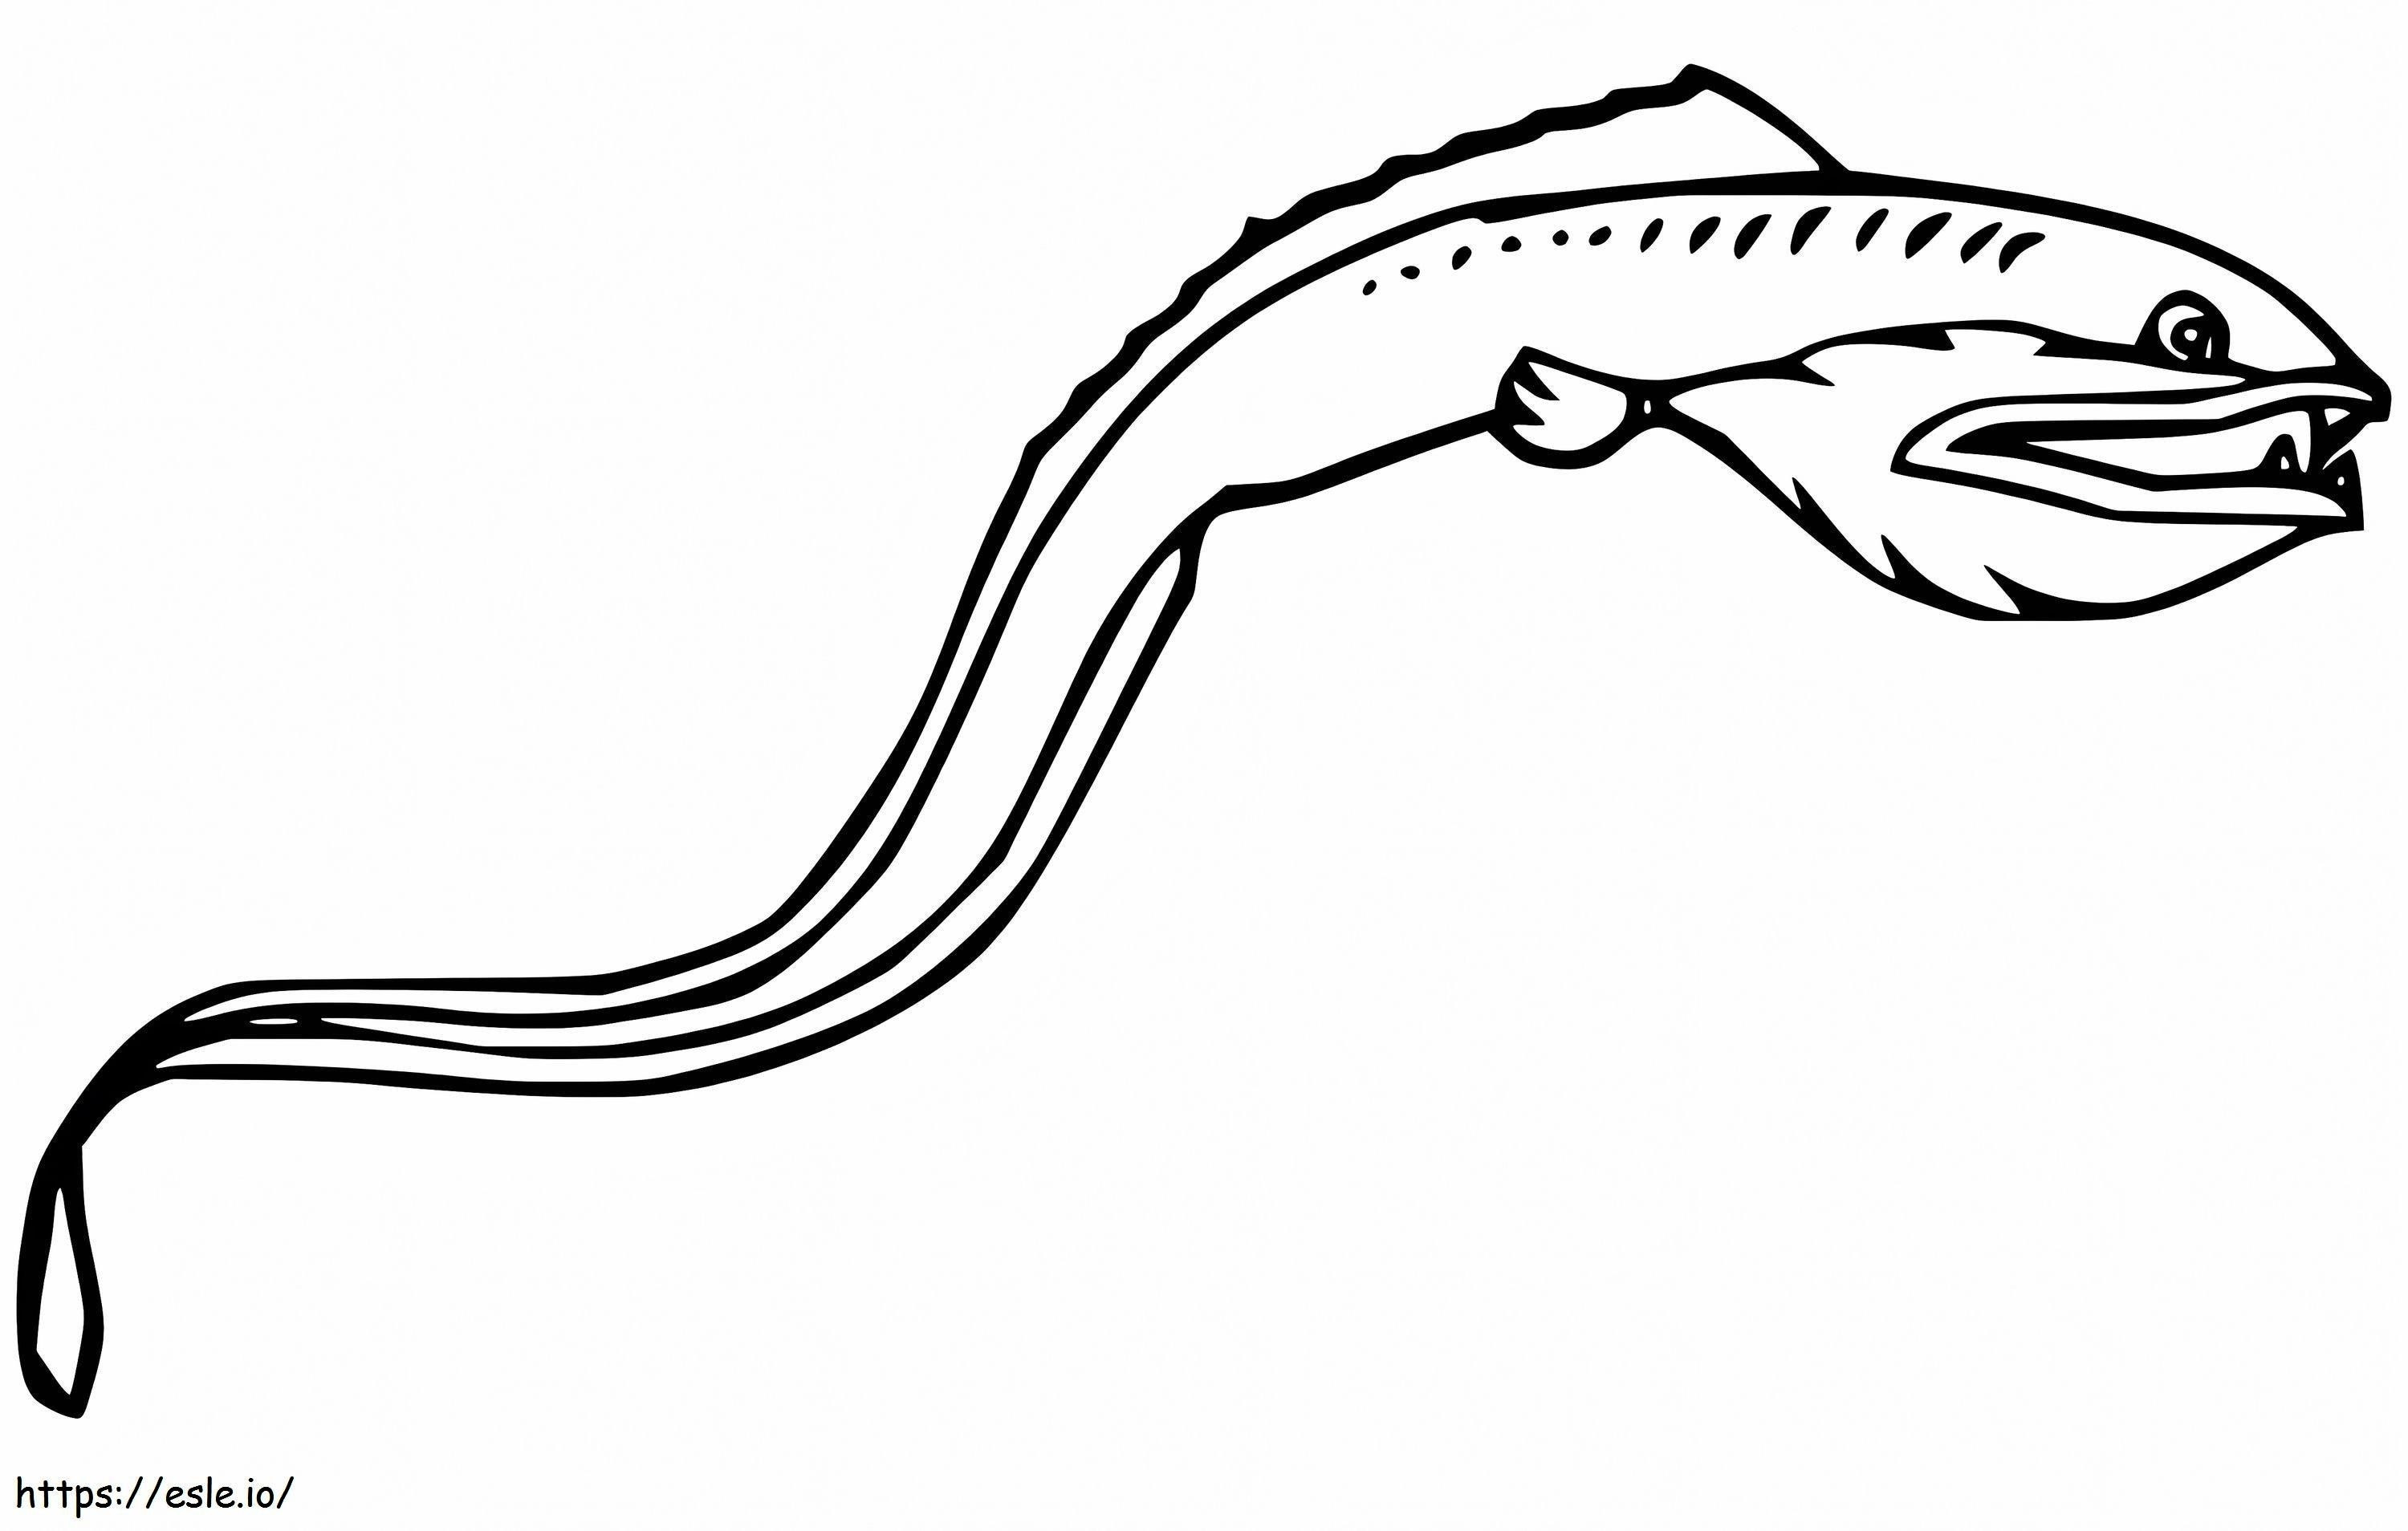 Viperfischschwimmen ausmalbilder